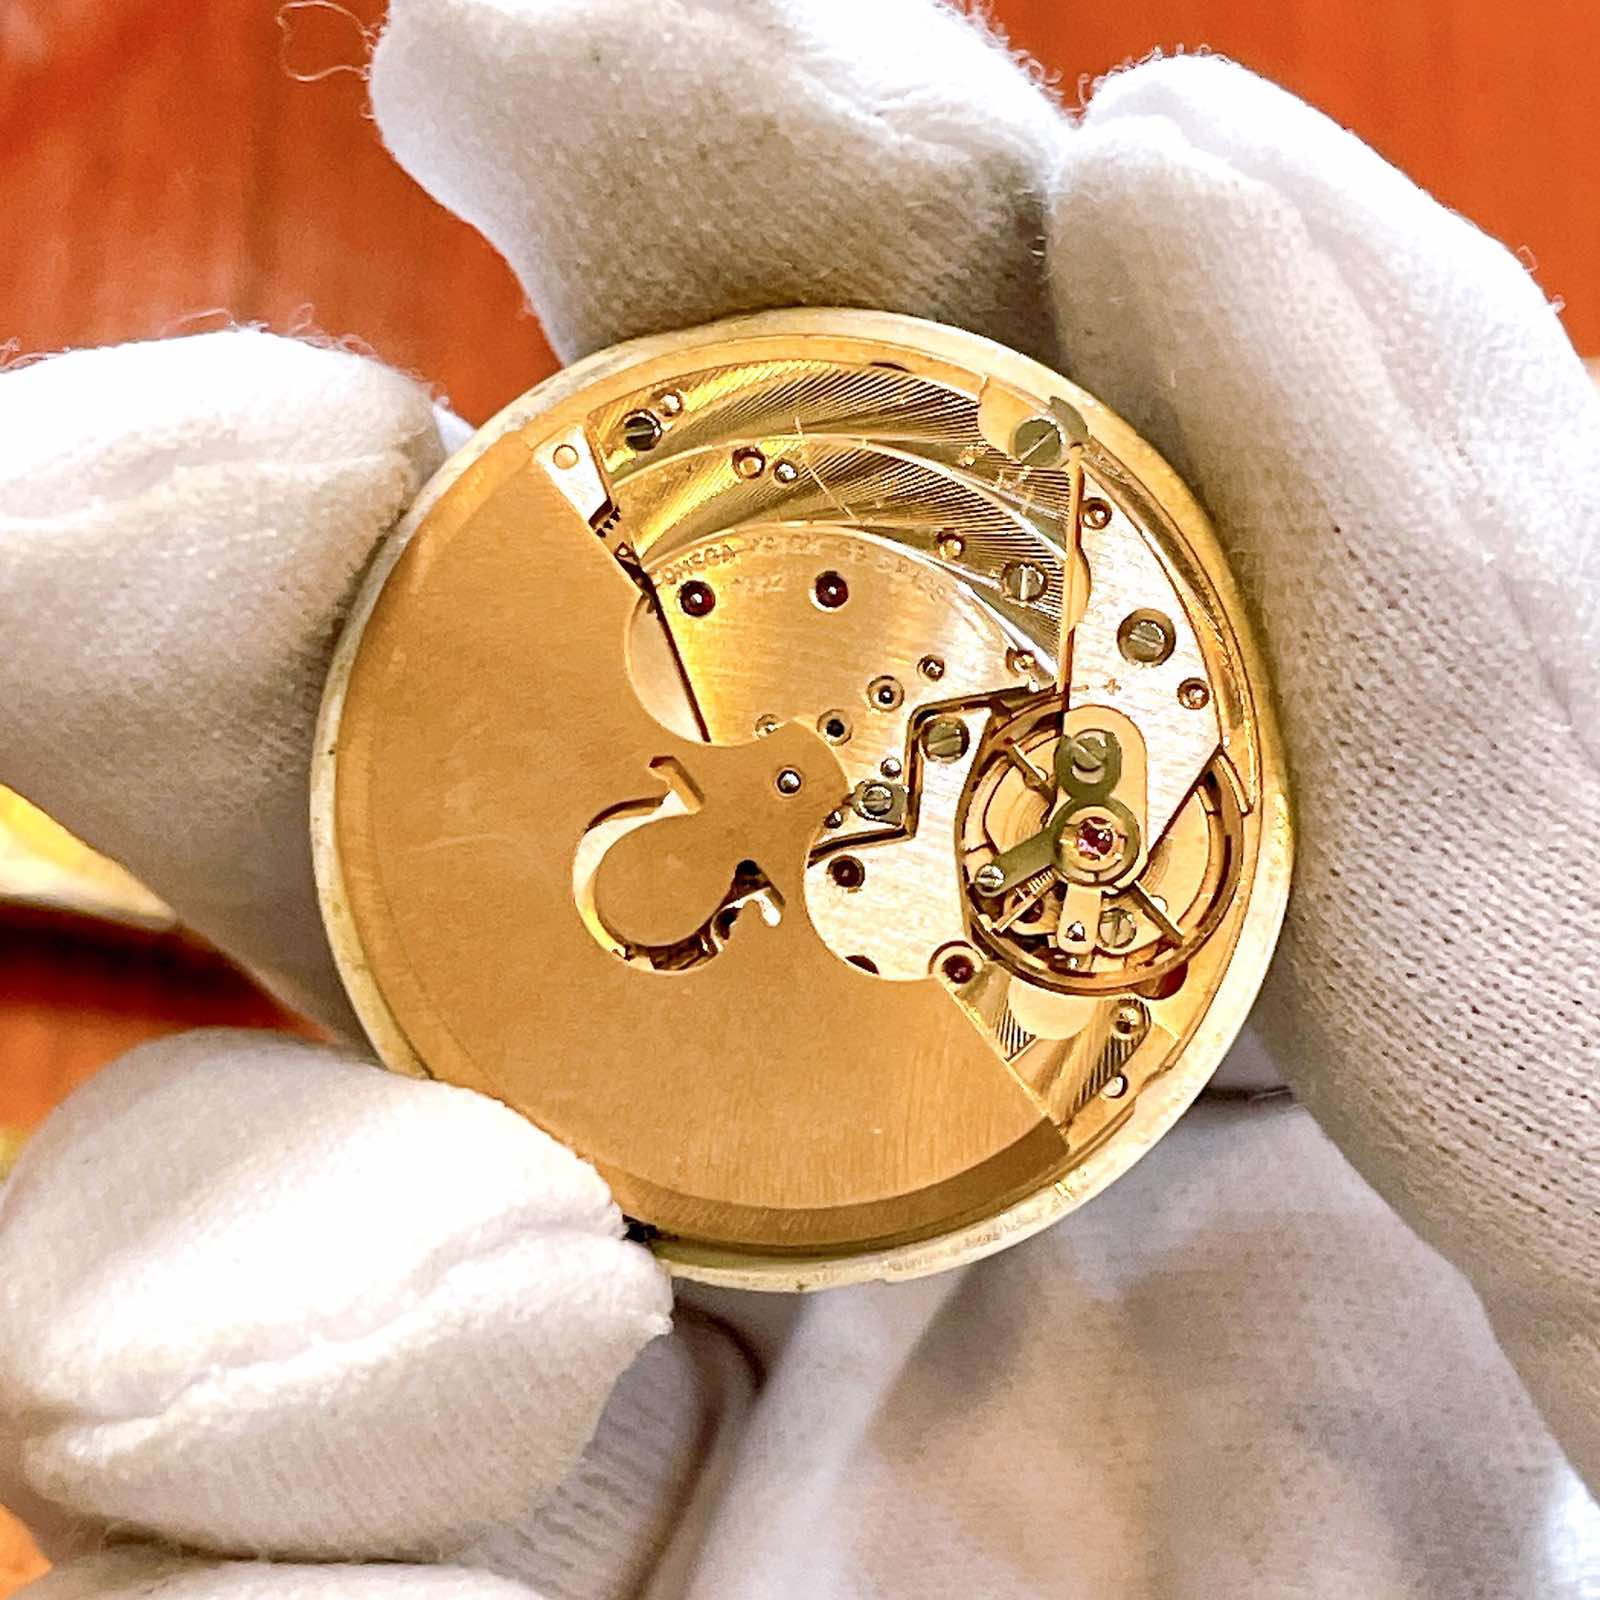 Đồng hồ Omega Automatic De Ville lacke vàng 40 micro chính hãng Thụy Sĩ 